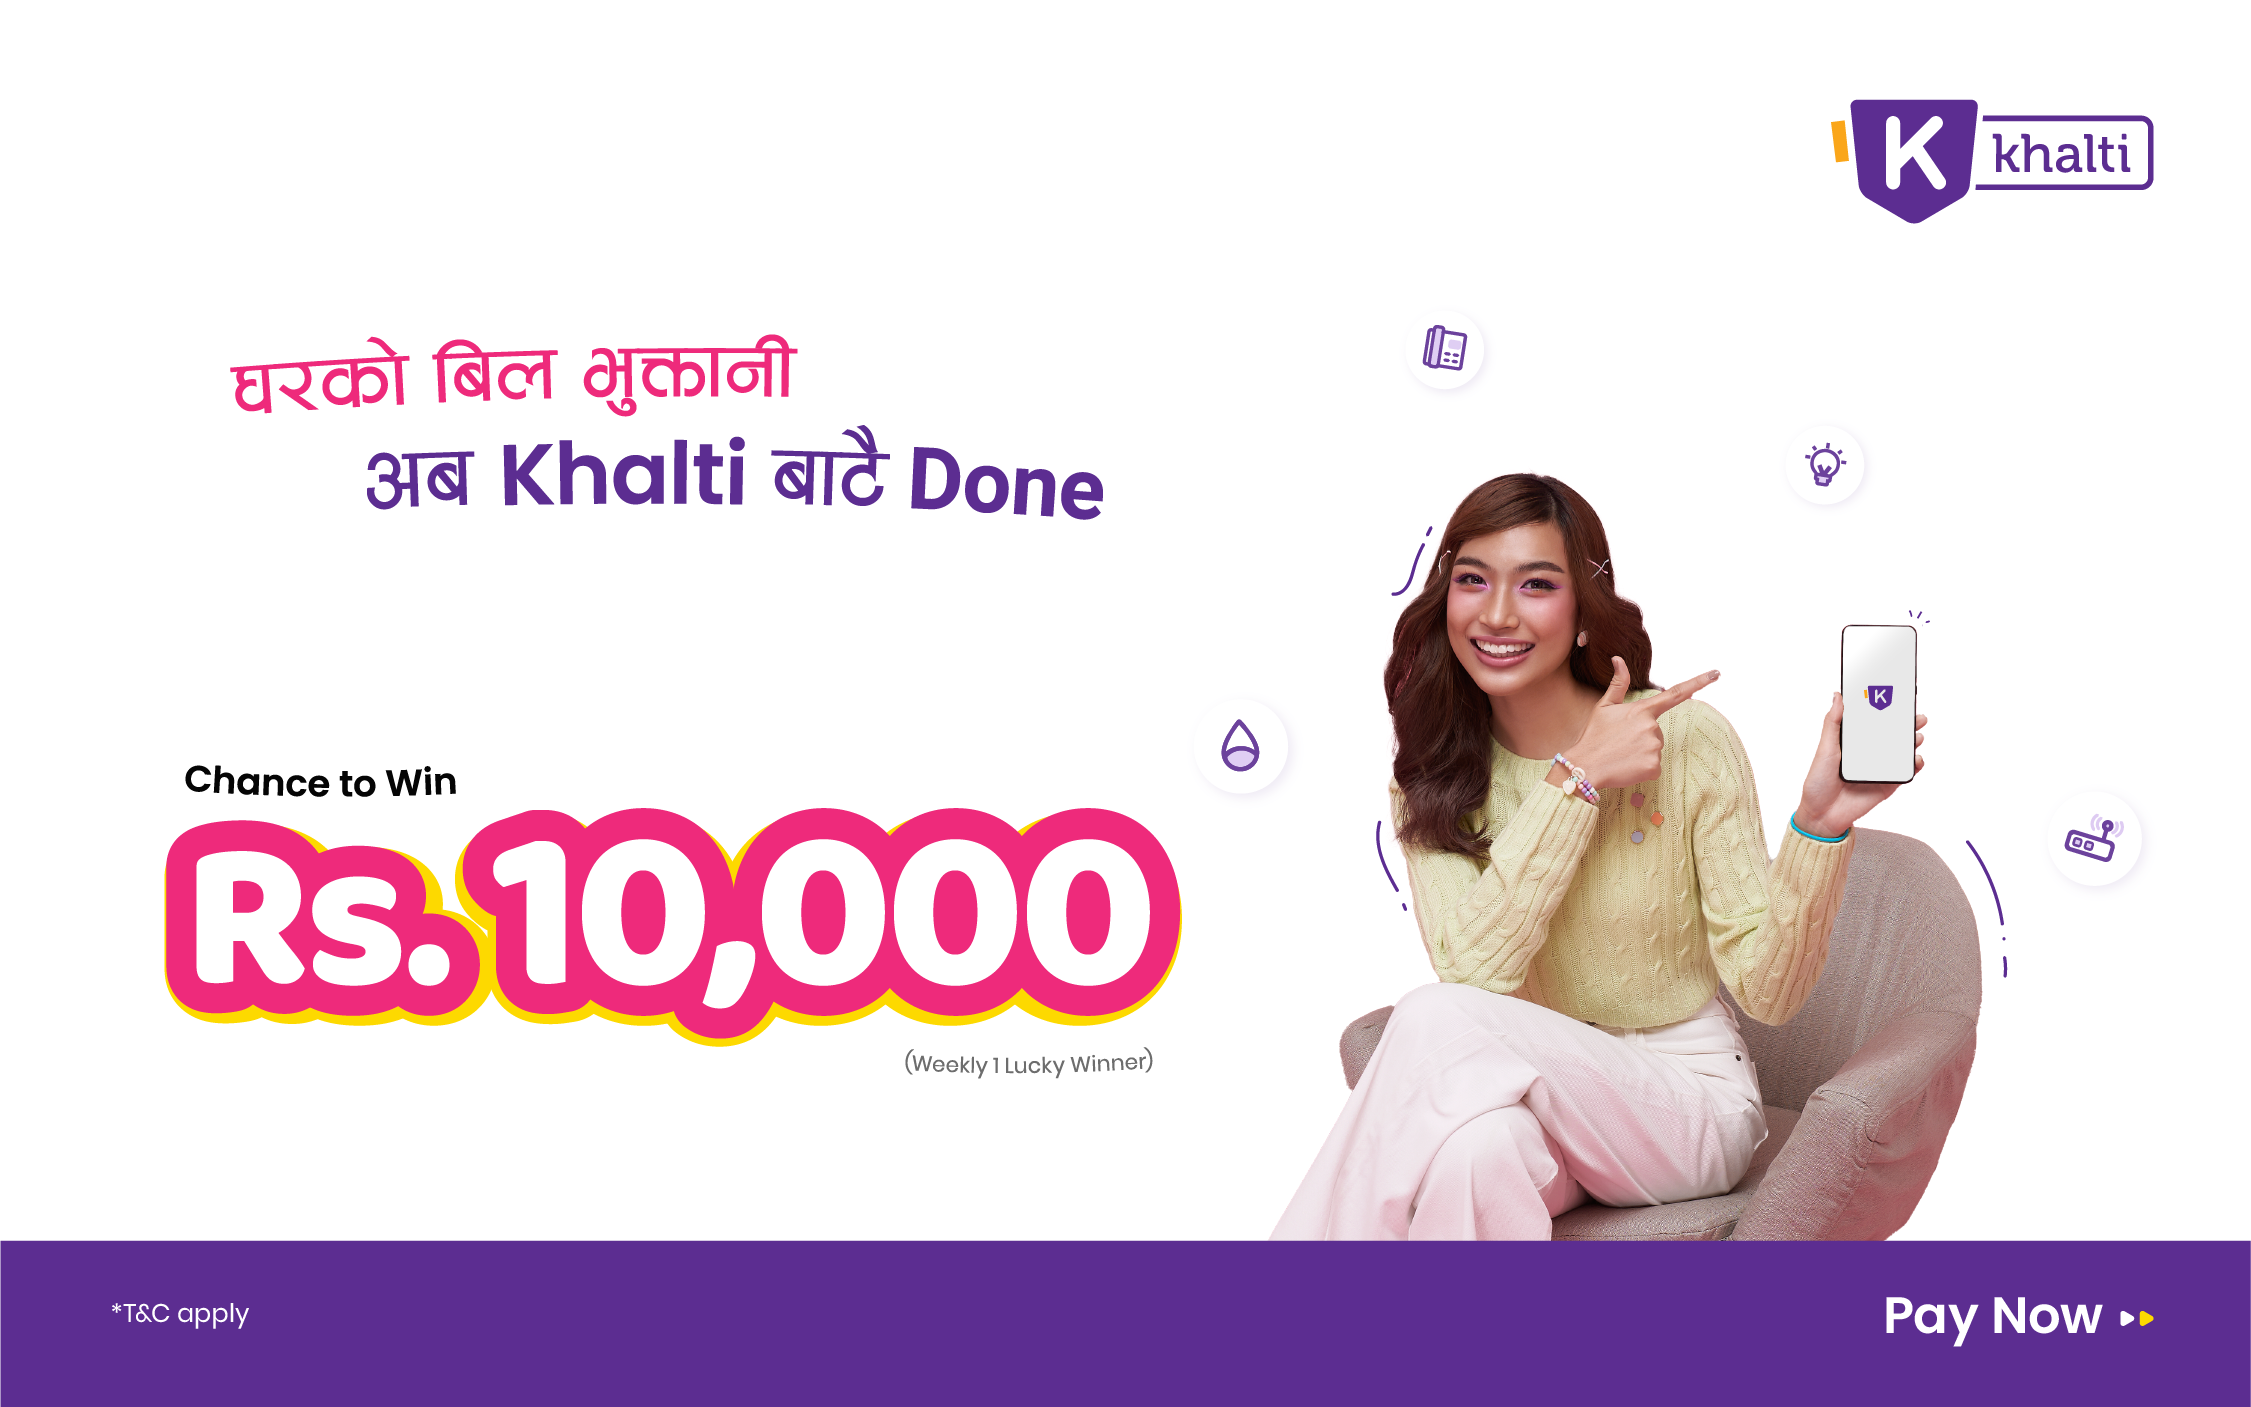 Khalti बाट घरकाे बिल भुक्तानी गर्दा Rs 10,000 उपहार